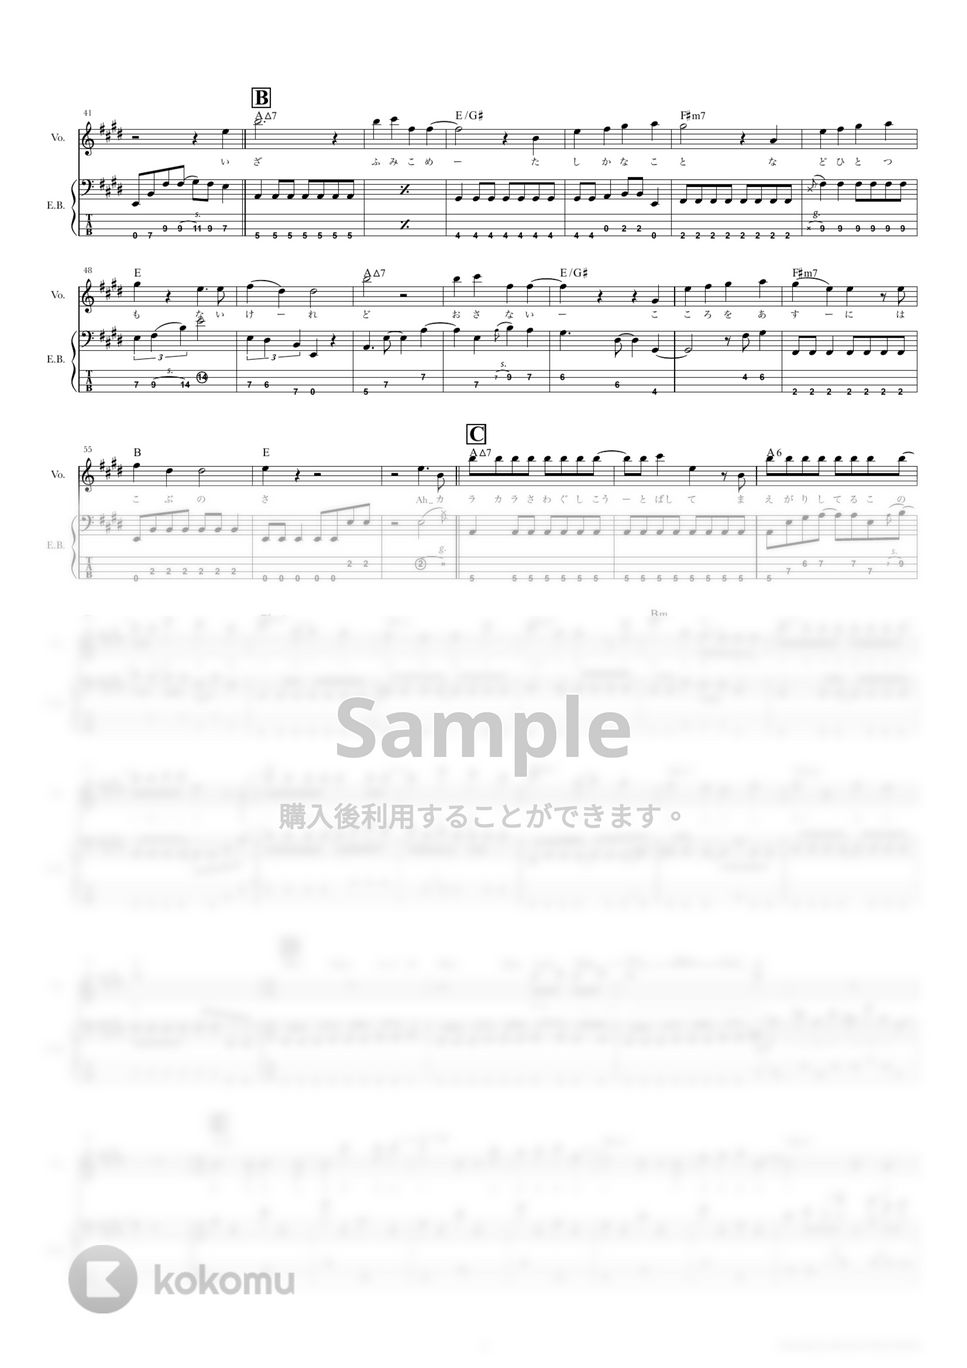 結束バンド - カラカラ (ベーススコア・歌詞・コード付き) by TRIAD GUITAR SCHOOL